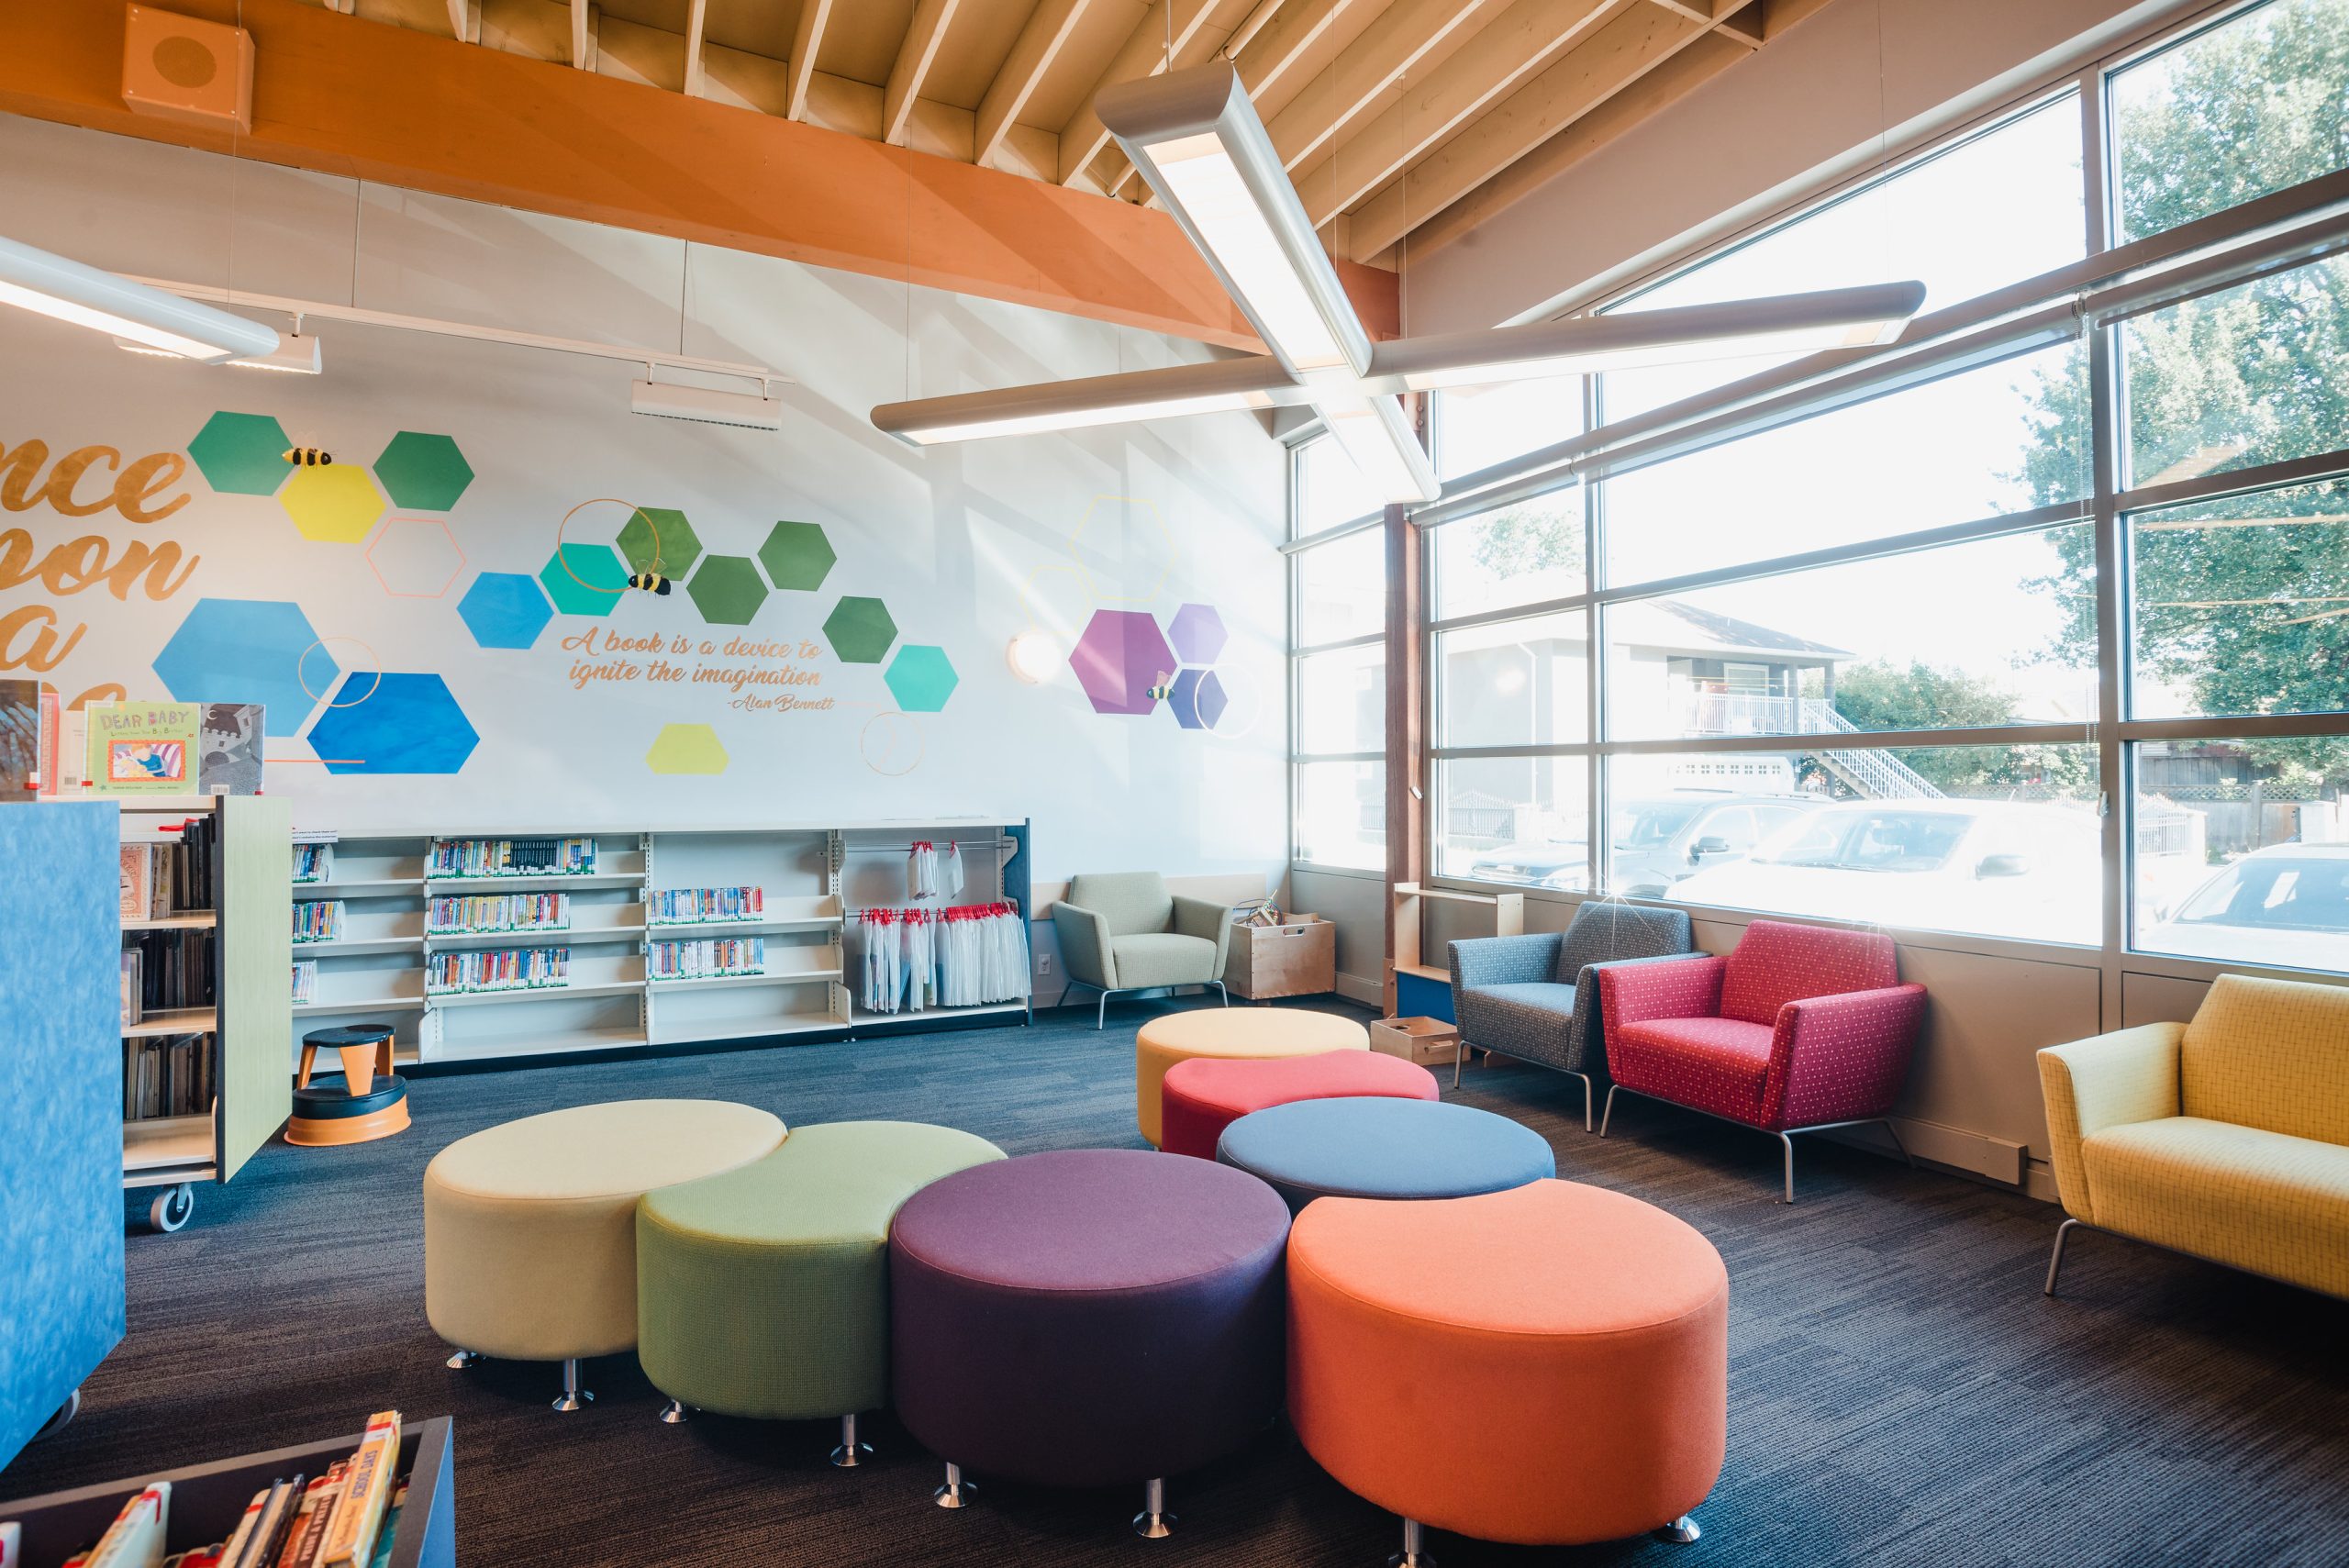 Squamish public library